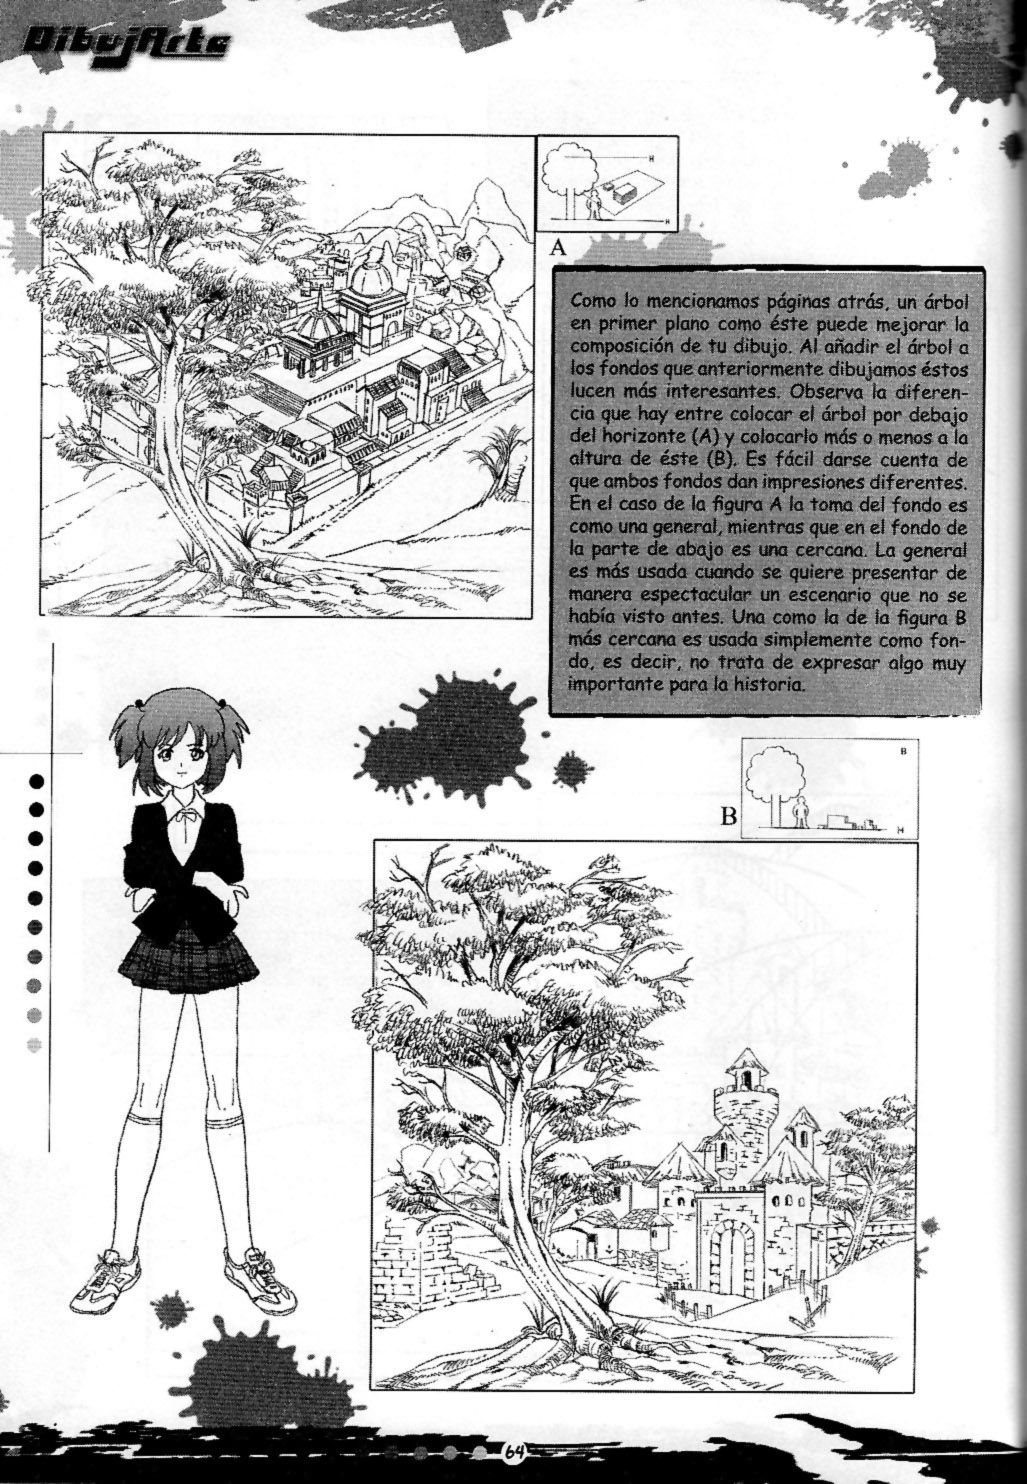 DibujArte Epecial Manga #15/20 - Especial fondos [Spanish] 63